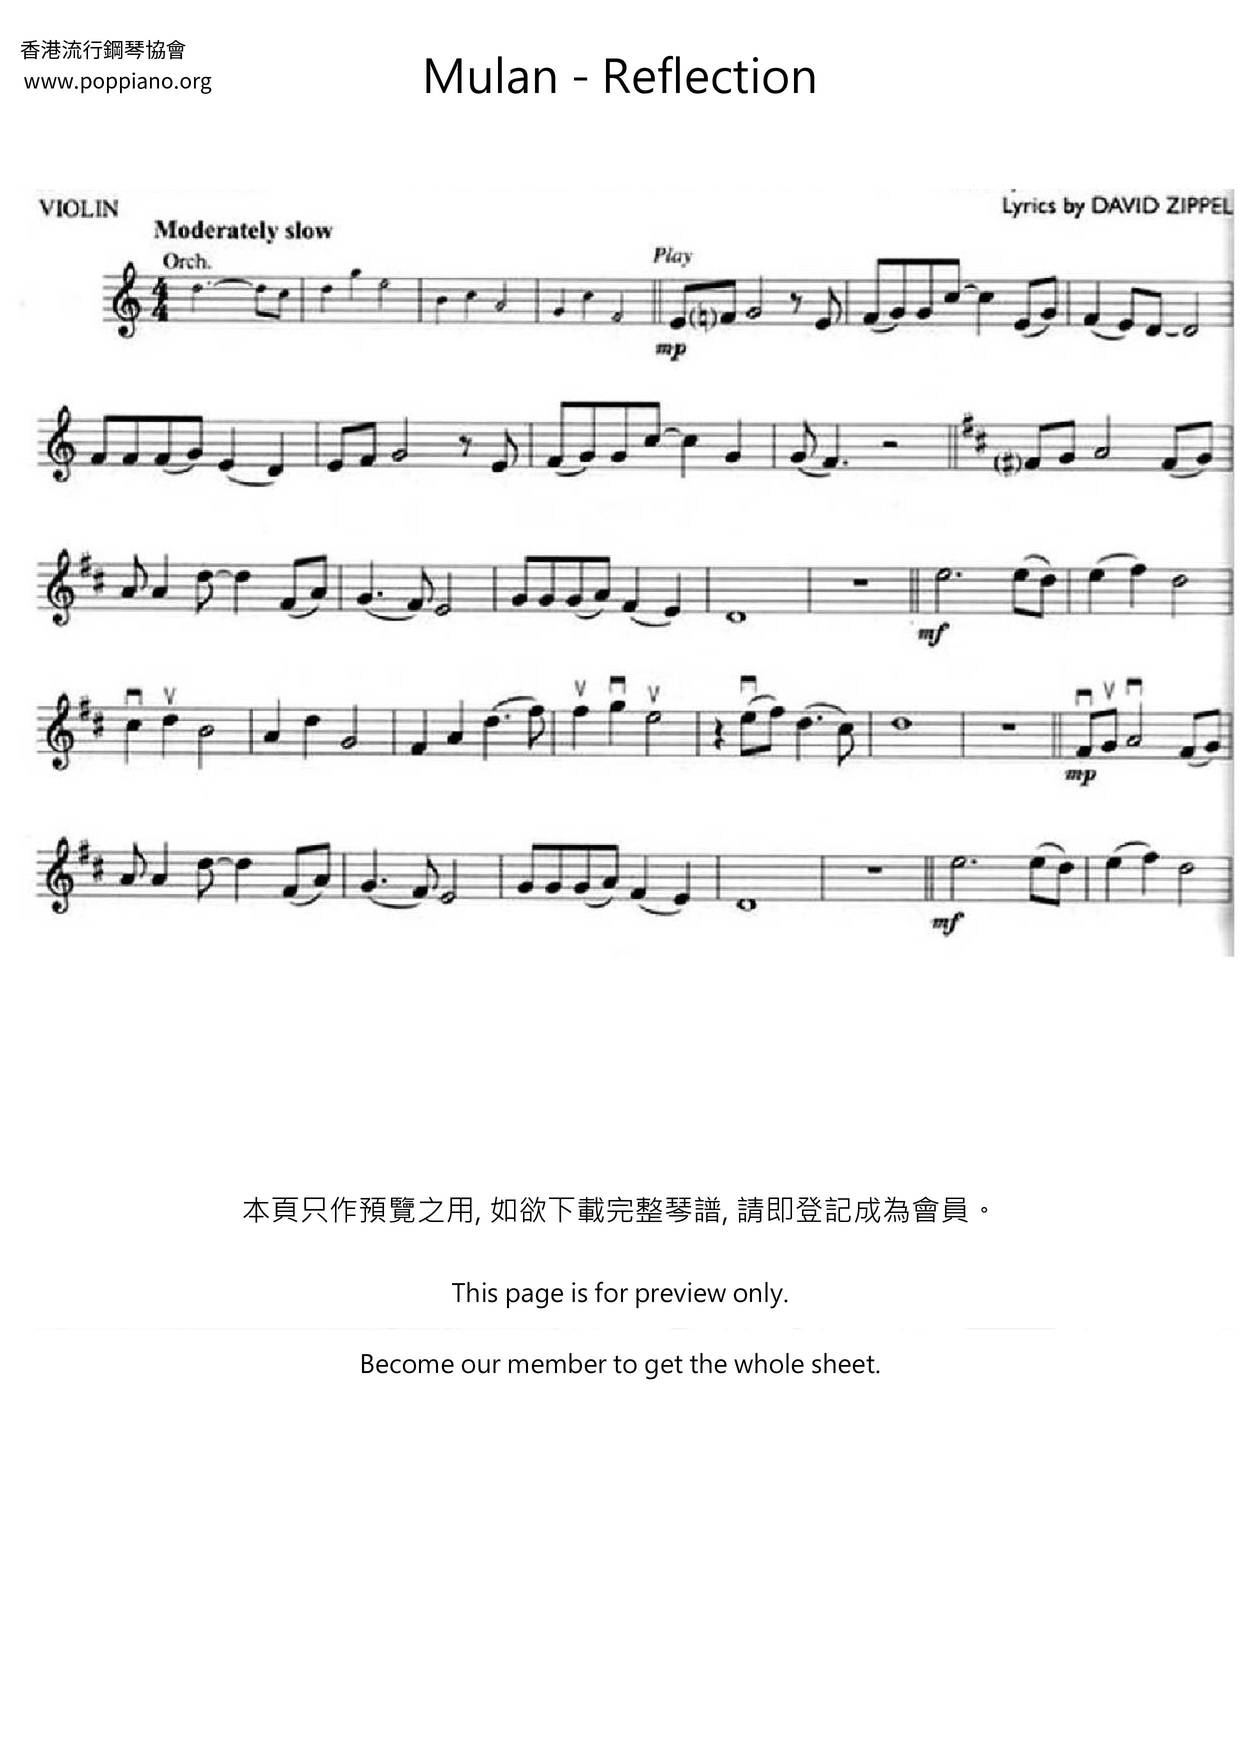 Mulan - Reflection Score